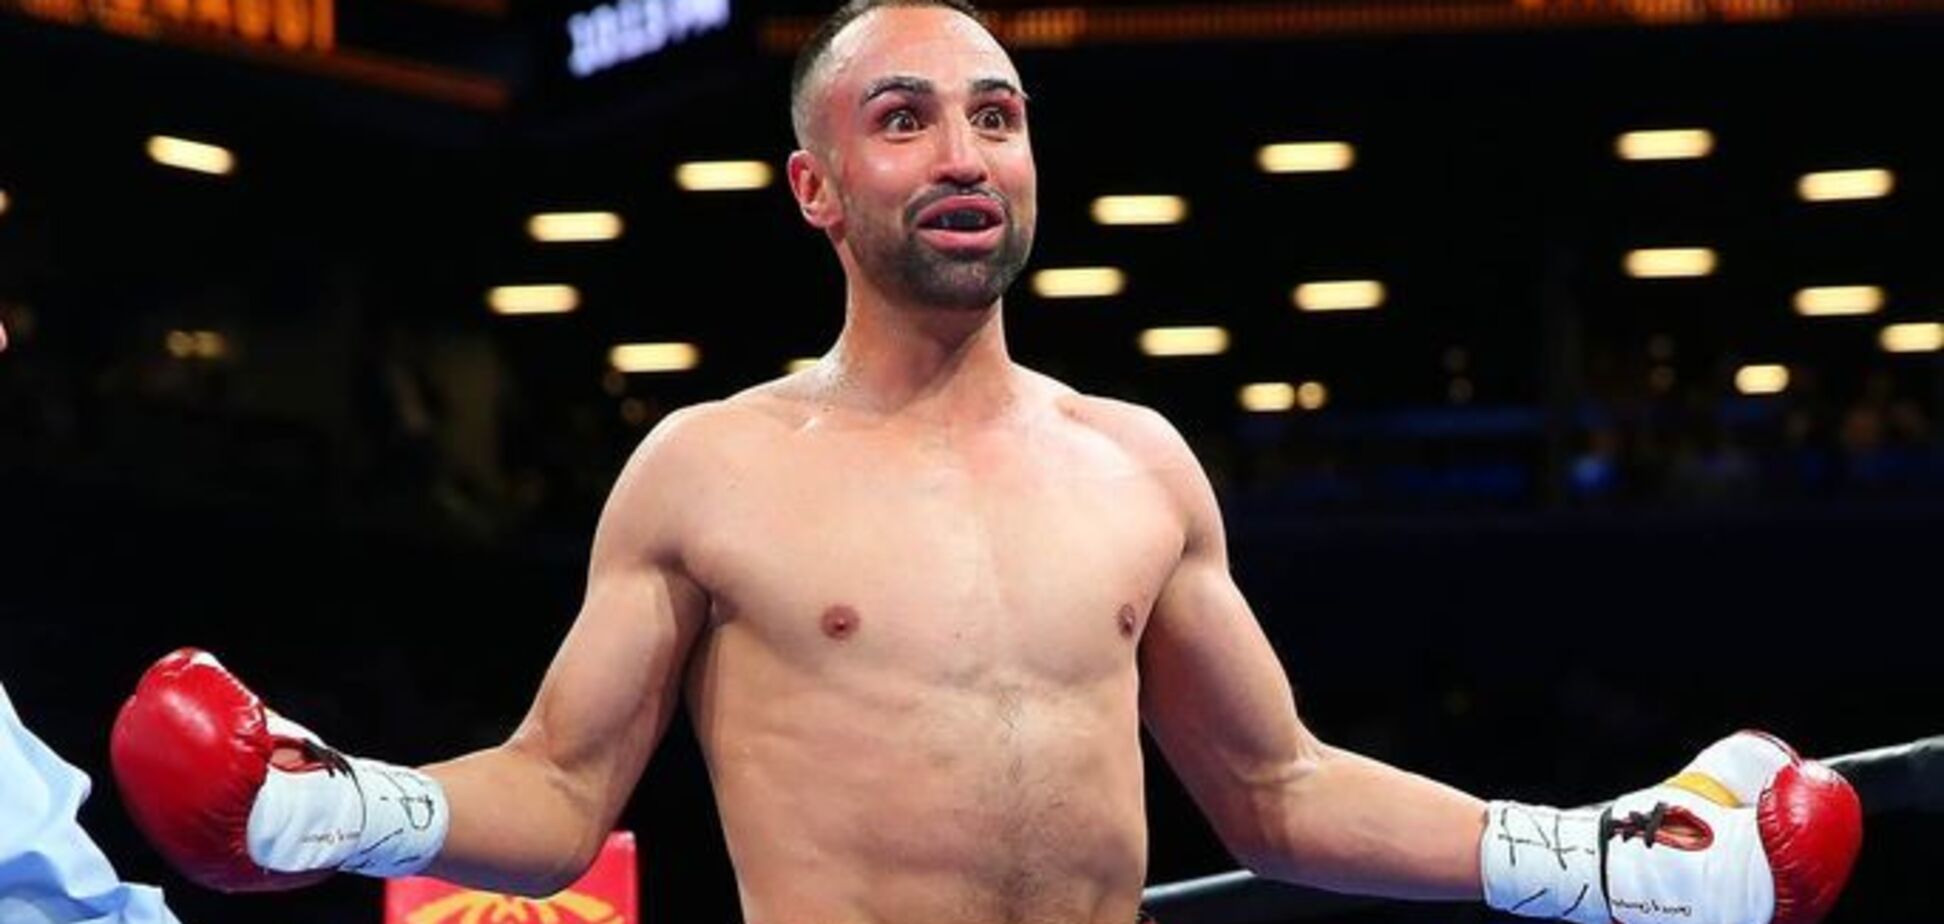 'Идиоты': экс-чемпион мира по боксу издевательски высказался о фанах ММА